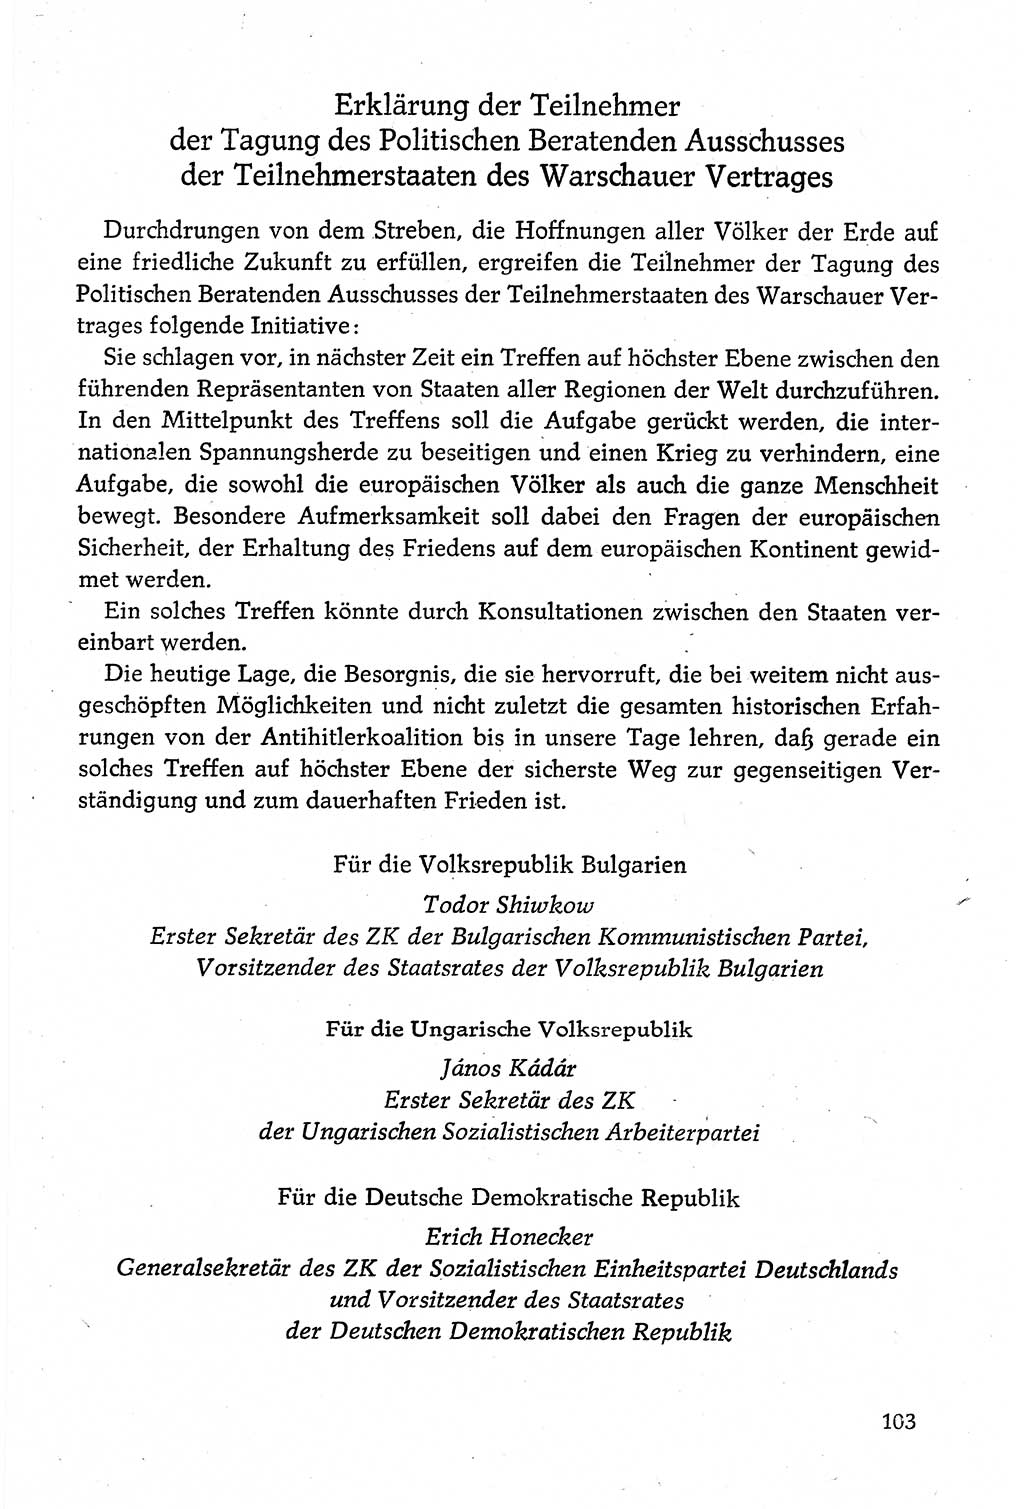 Dokumente der Sozialistischen Einheitspartei Deutschlands (SED) [Deutsche Demokratische Republik (DDR)] 1980-1981, Seite 103 (Dok. SED DDR 1980-1981, S. 103)